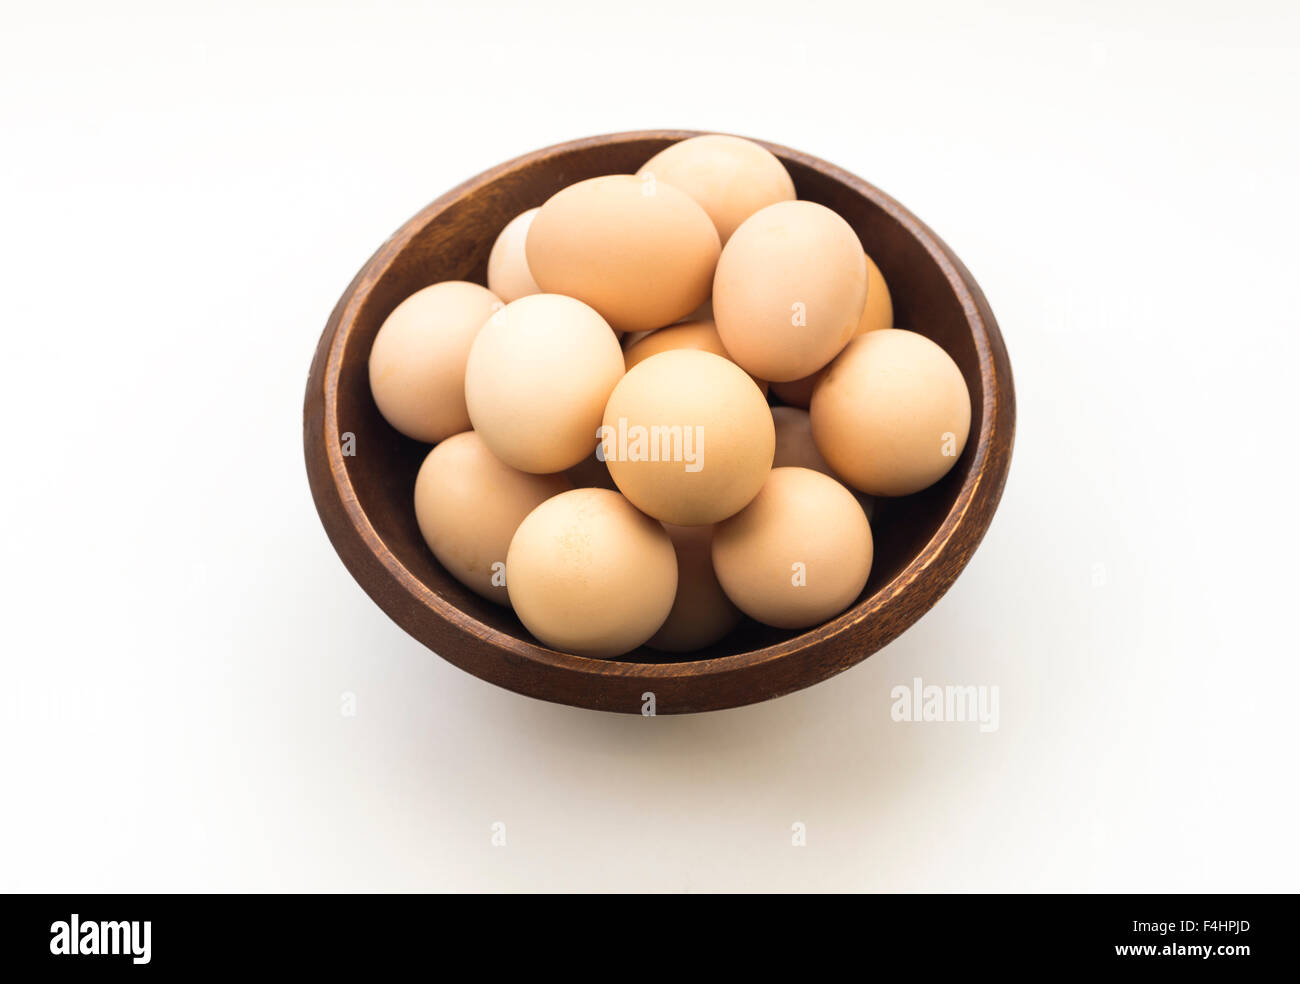 Les œufs. buena salud y alimentacion. La bonne nourriture Banque D'Images